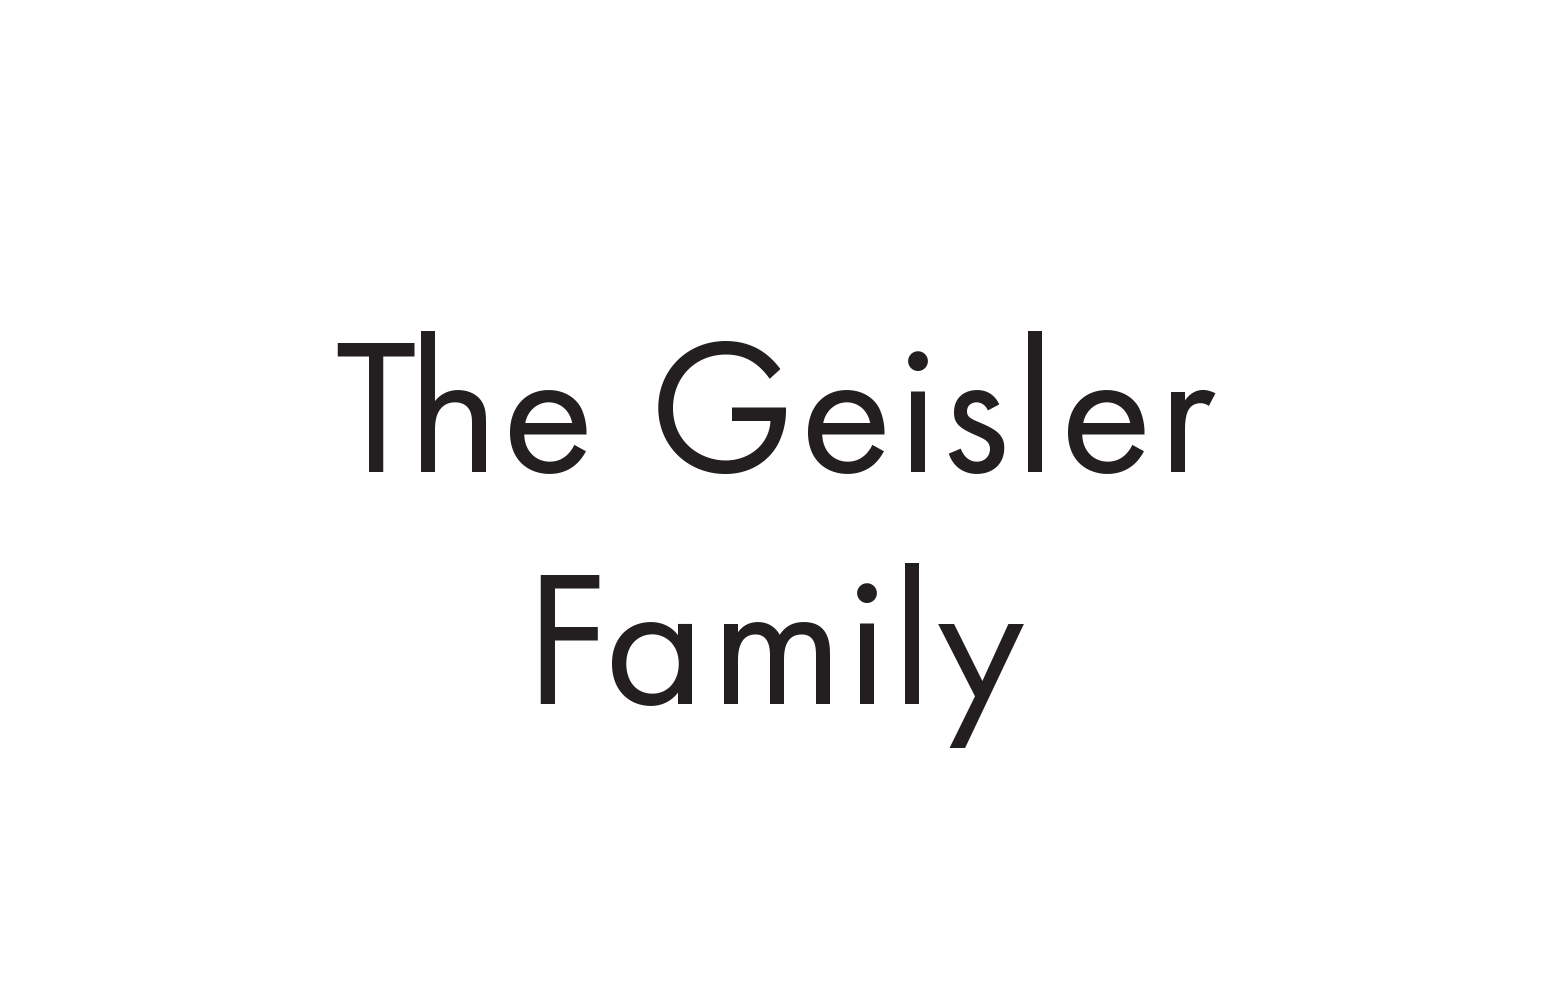 The Geisler Family